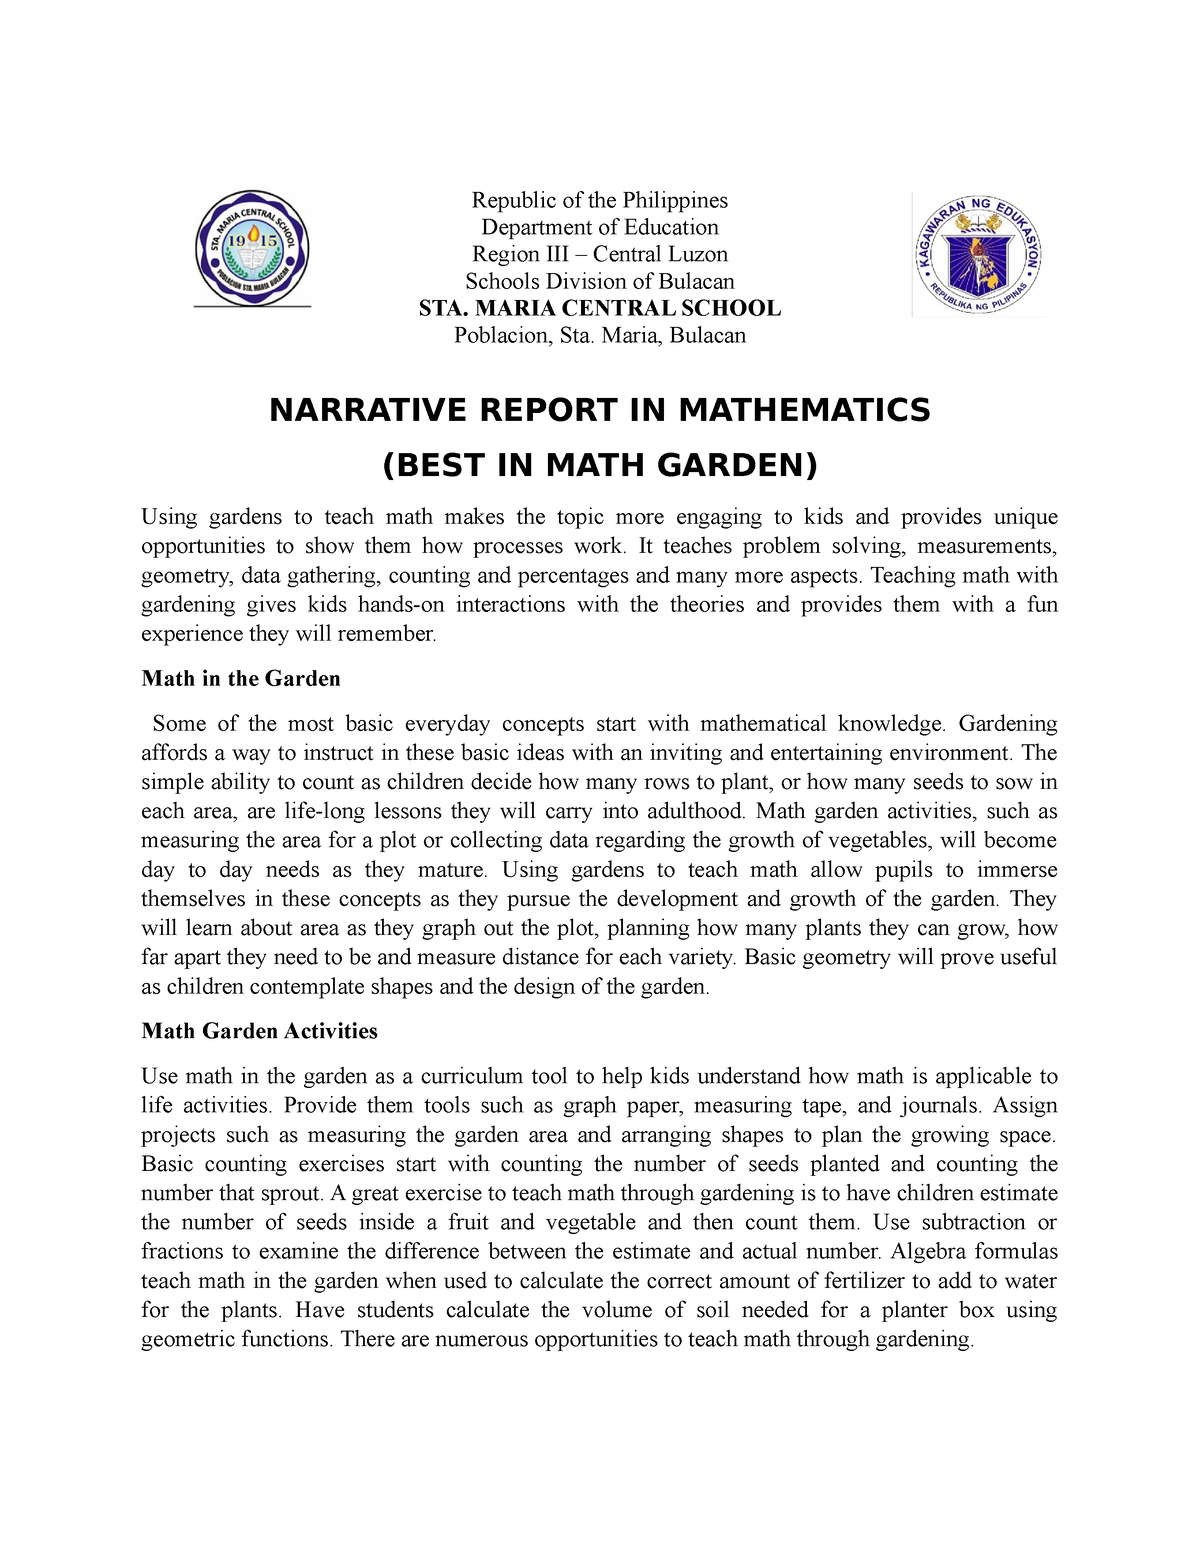 narrative report research topics